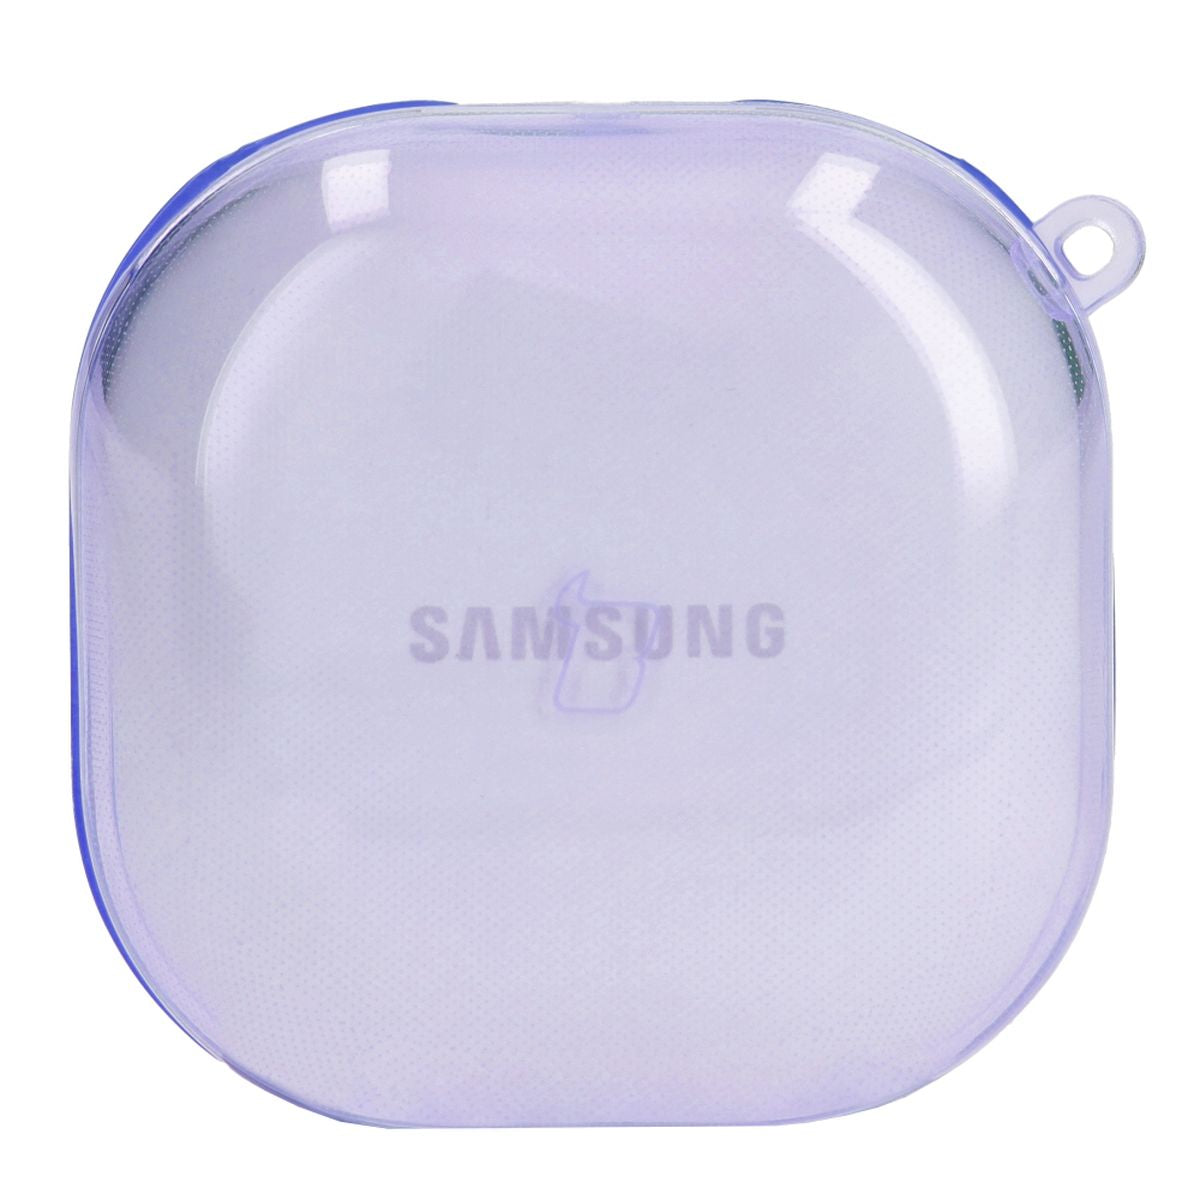 Schutzhülle für Samsung Galaxy Buds Live / Pro / Buds2 / Buds2 Pro. Bizon Case Headphone Clear, Transparent-Violett